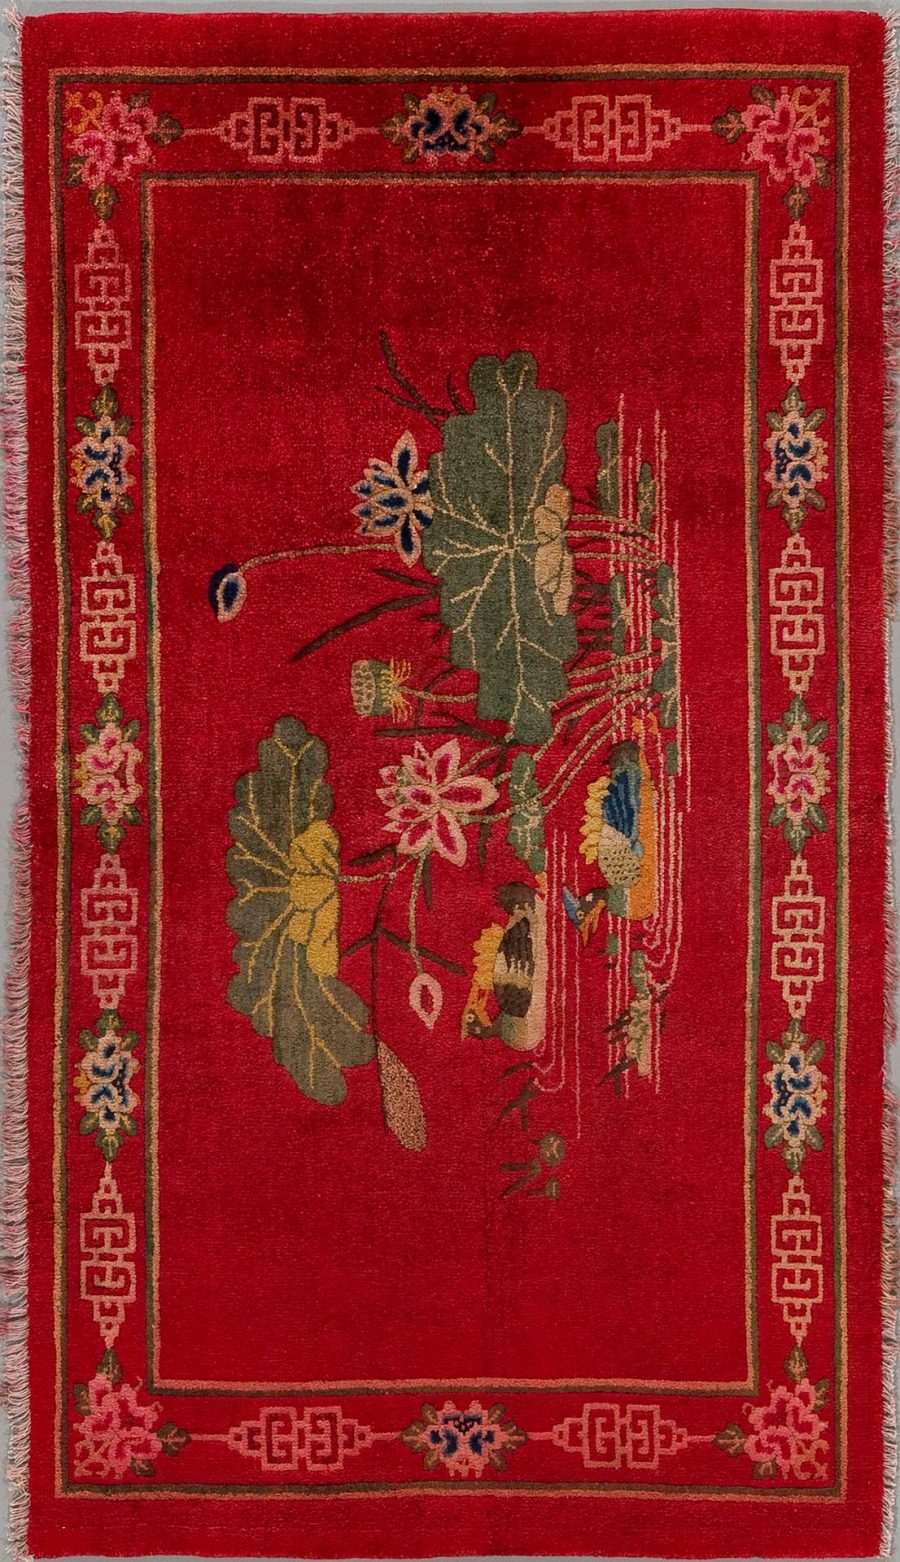 Traditioneller handgeknüpfter Teppich mit einem dichten, blumenartigen Muster auf einem roten Hintergrund, eingerahmt von einem dekorativen geometrischen Rand in beige, blau und roten Tönen.